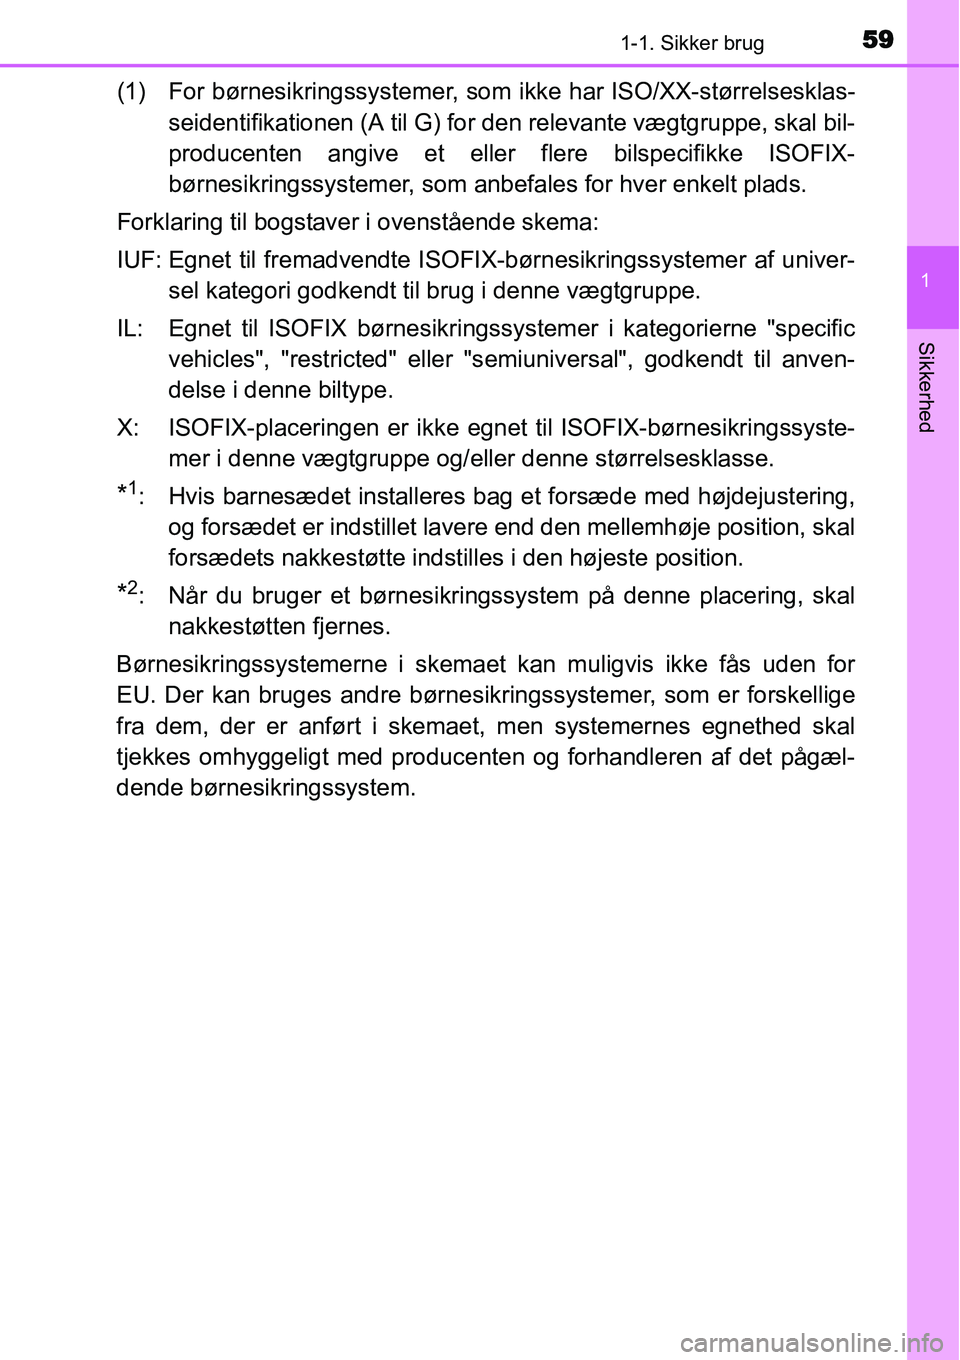 TOYOTA YARIS HYBRID 2014  Brugsanvisning (in Danish) 591-1. Sikker brug
1
Sikkerhed
(1) For børnesikringssystemer, som ikke har ISO/XX-størrelsesklas-
seidentifikationen (A til G) for den relevante vægtgruppe, skal bil-
producenten angive et eller fl